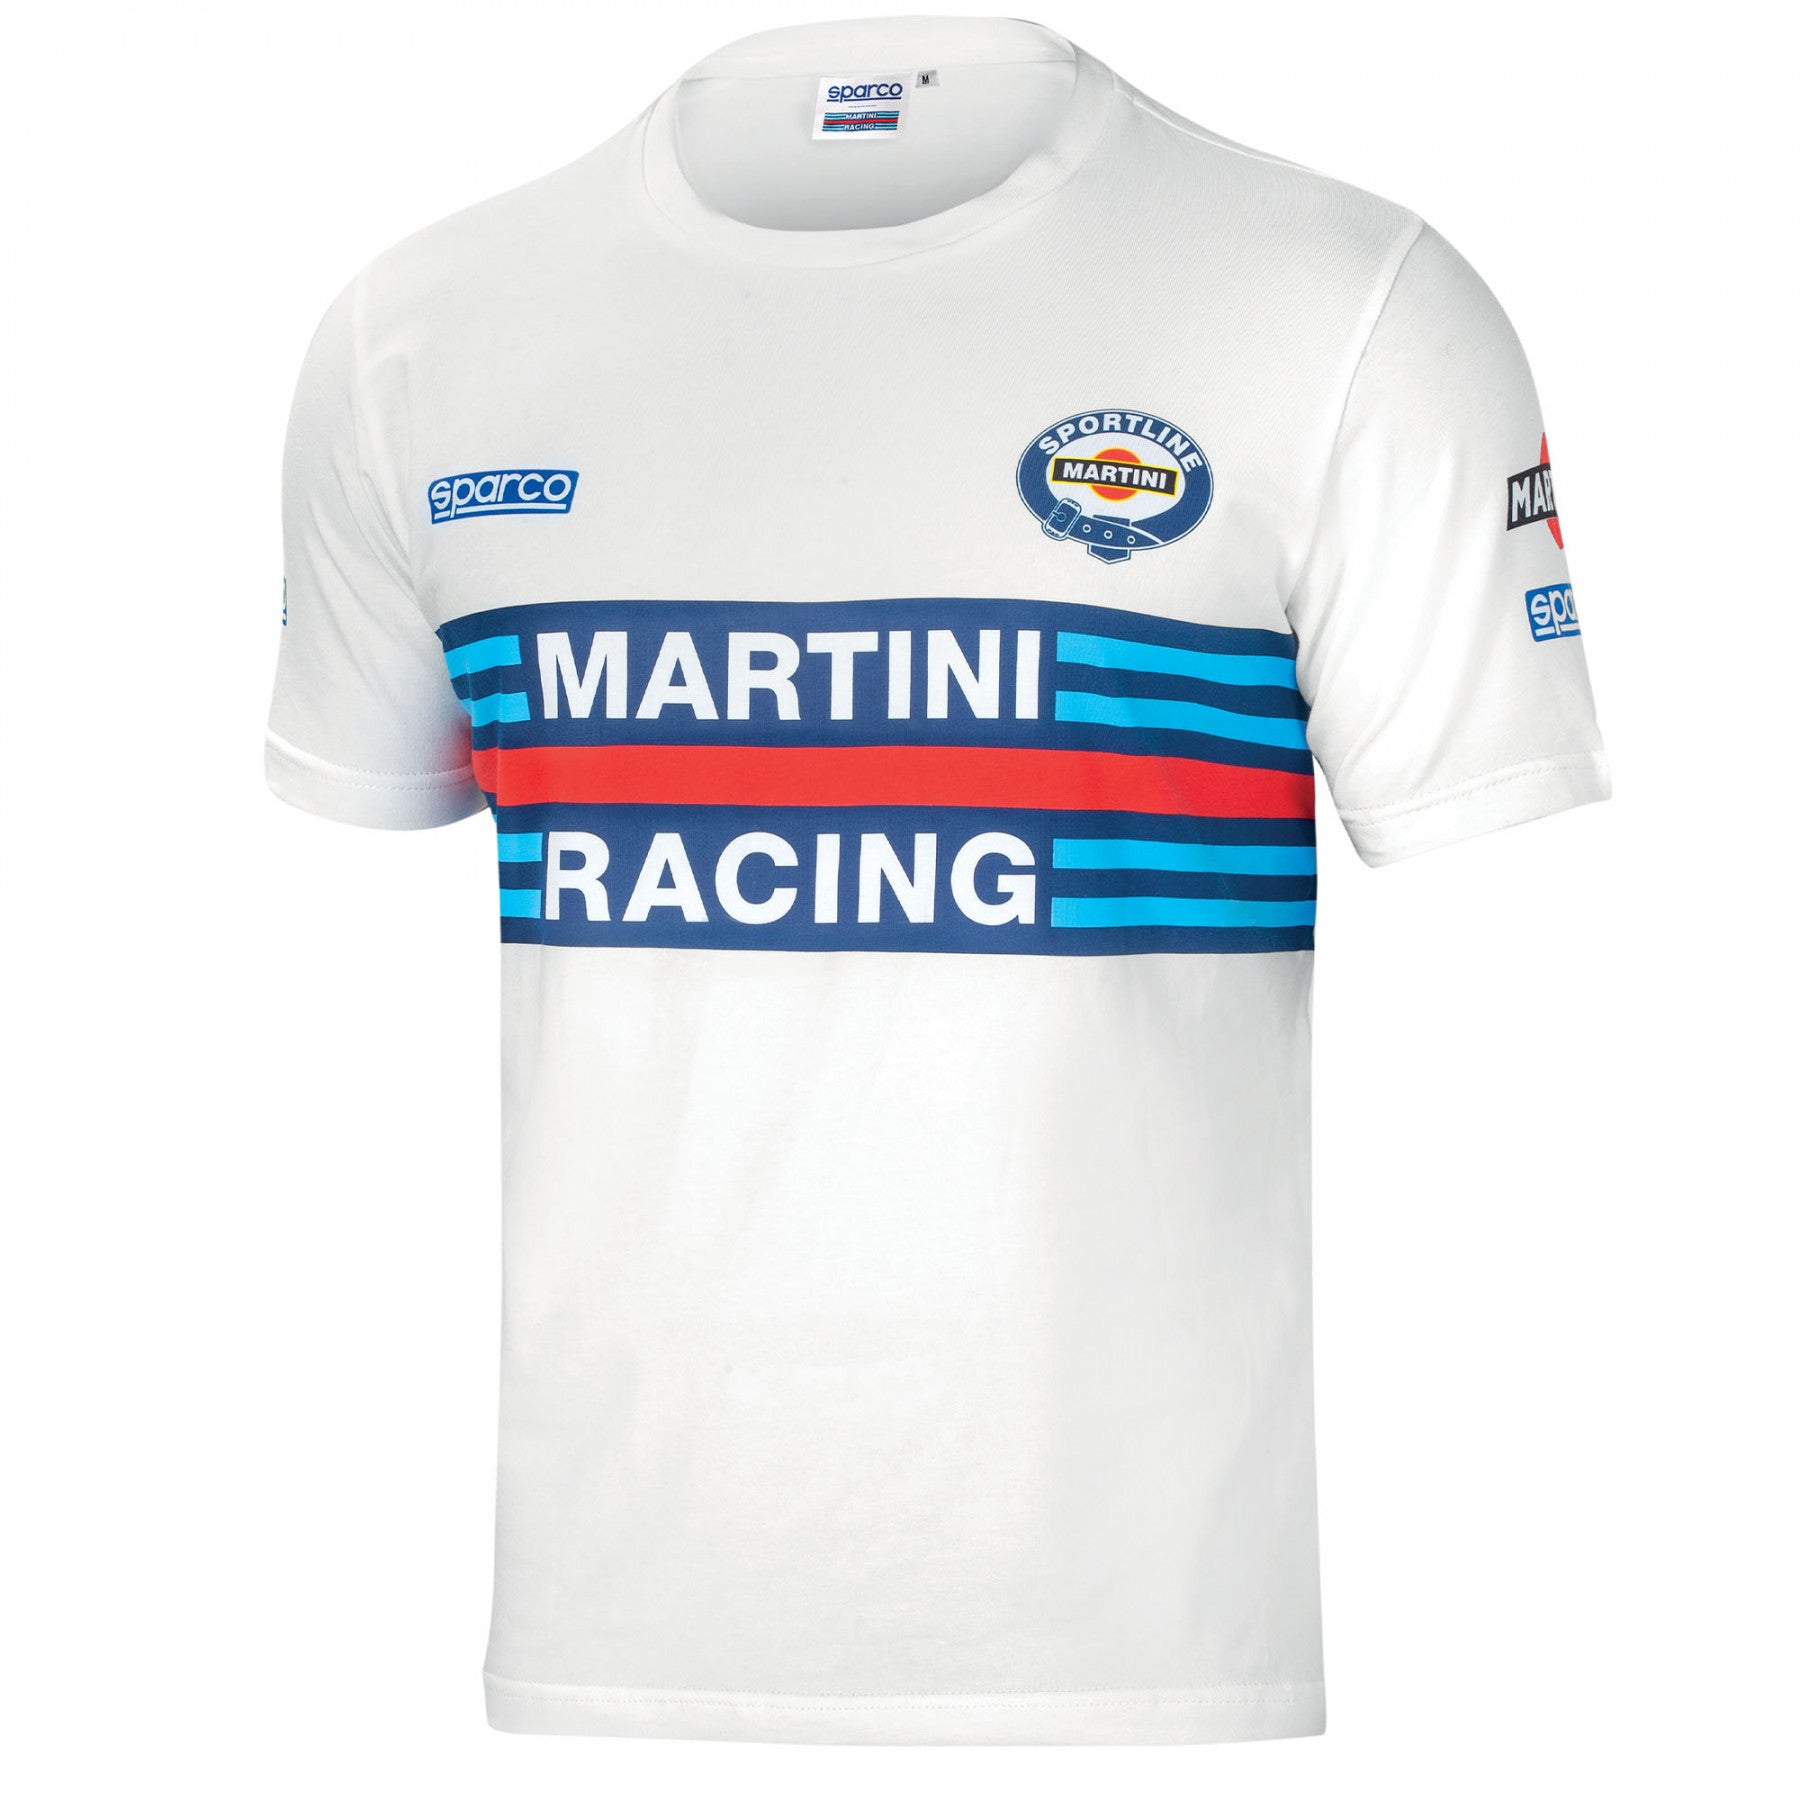 SPARCO 01274MRBI6XXX T-shirt MARTINI RACING, white, size XXXL Photo-0 